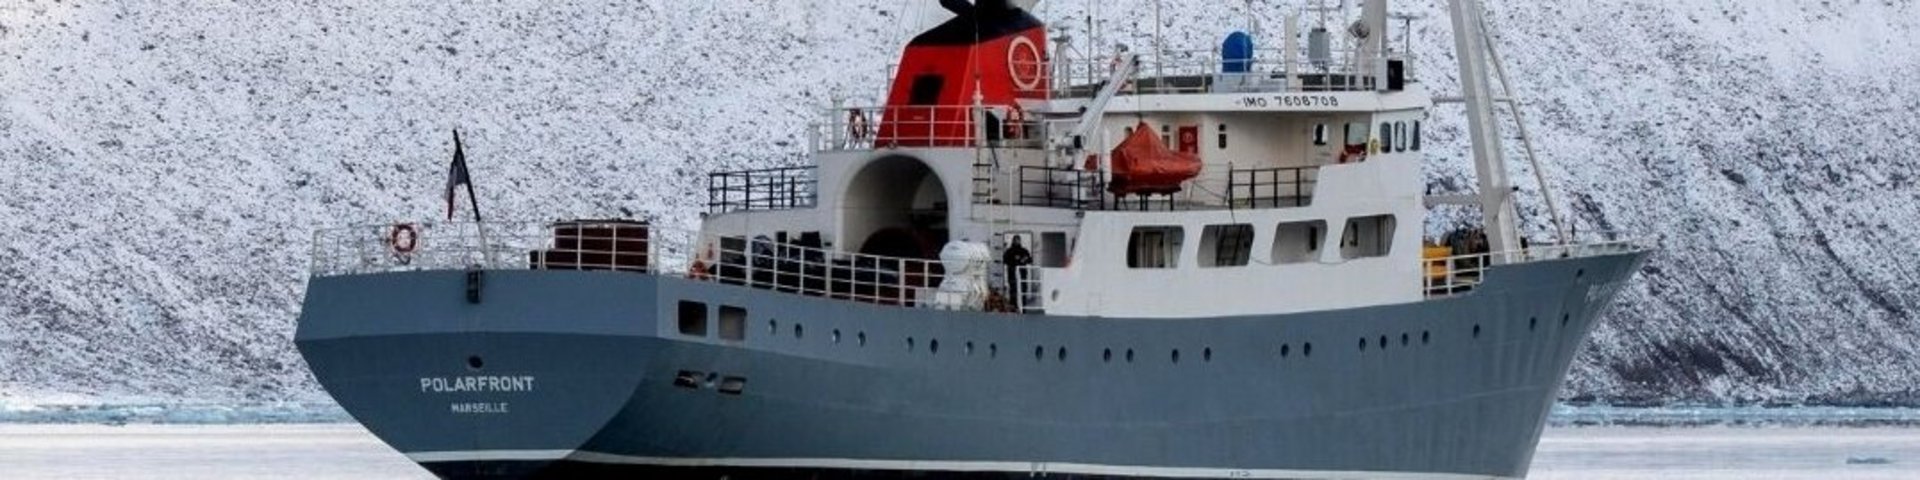 Polarfront Expeditionsschiff unter französischer Flagge